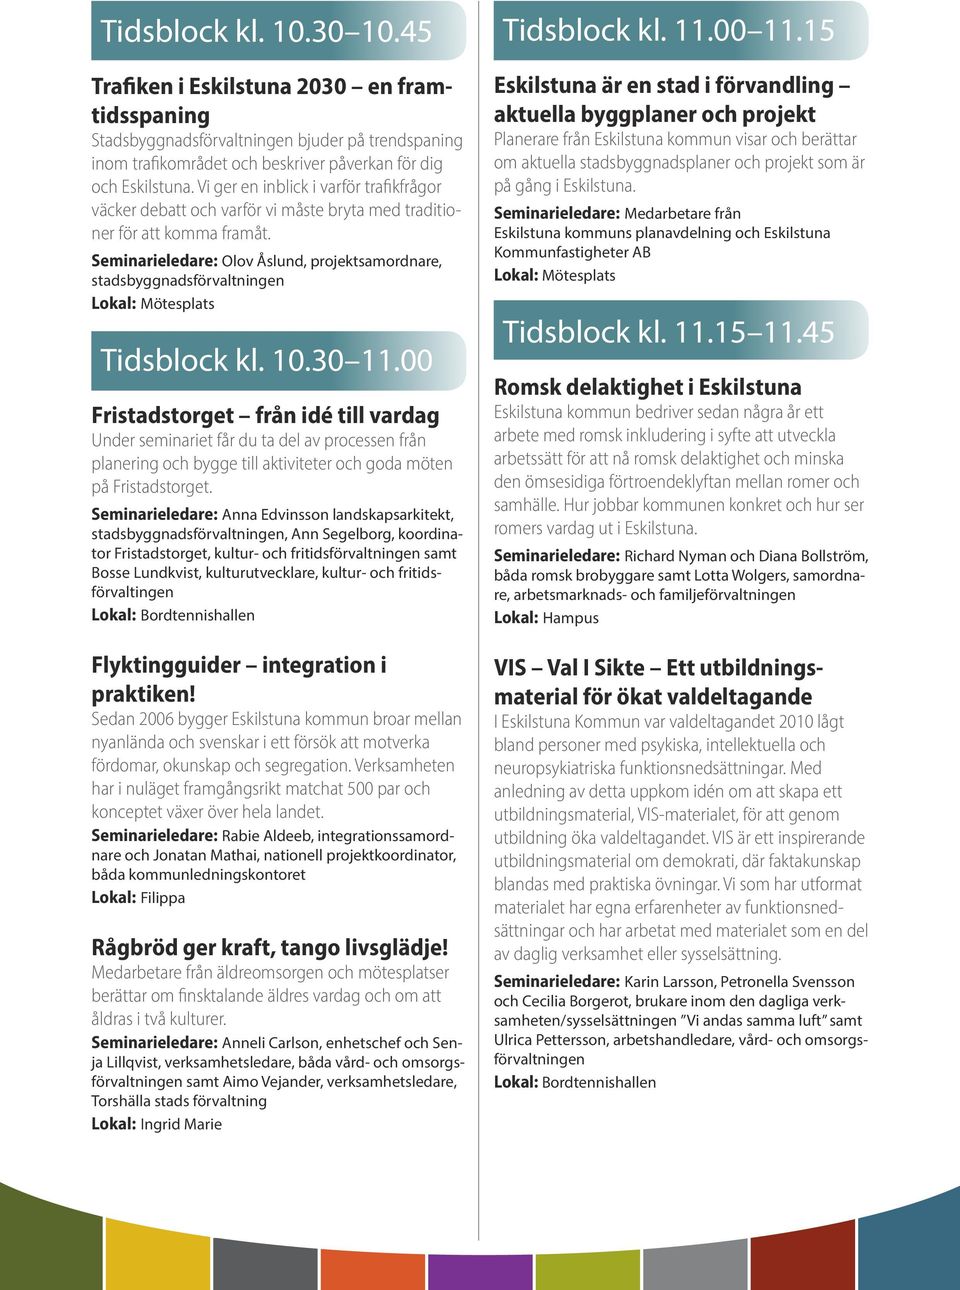 Seminarieledare: Olov Åslund, projektsamordnare, stadsbyggnadsförvaltningen Tidsblock kl. 10.30 11.